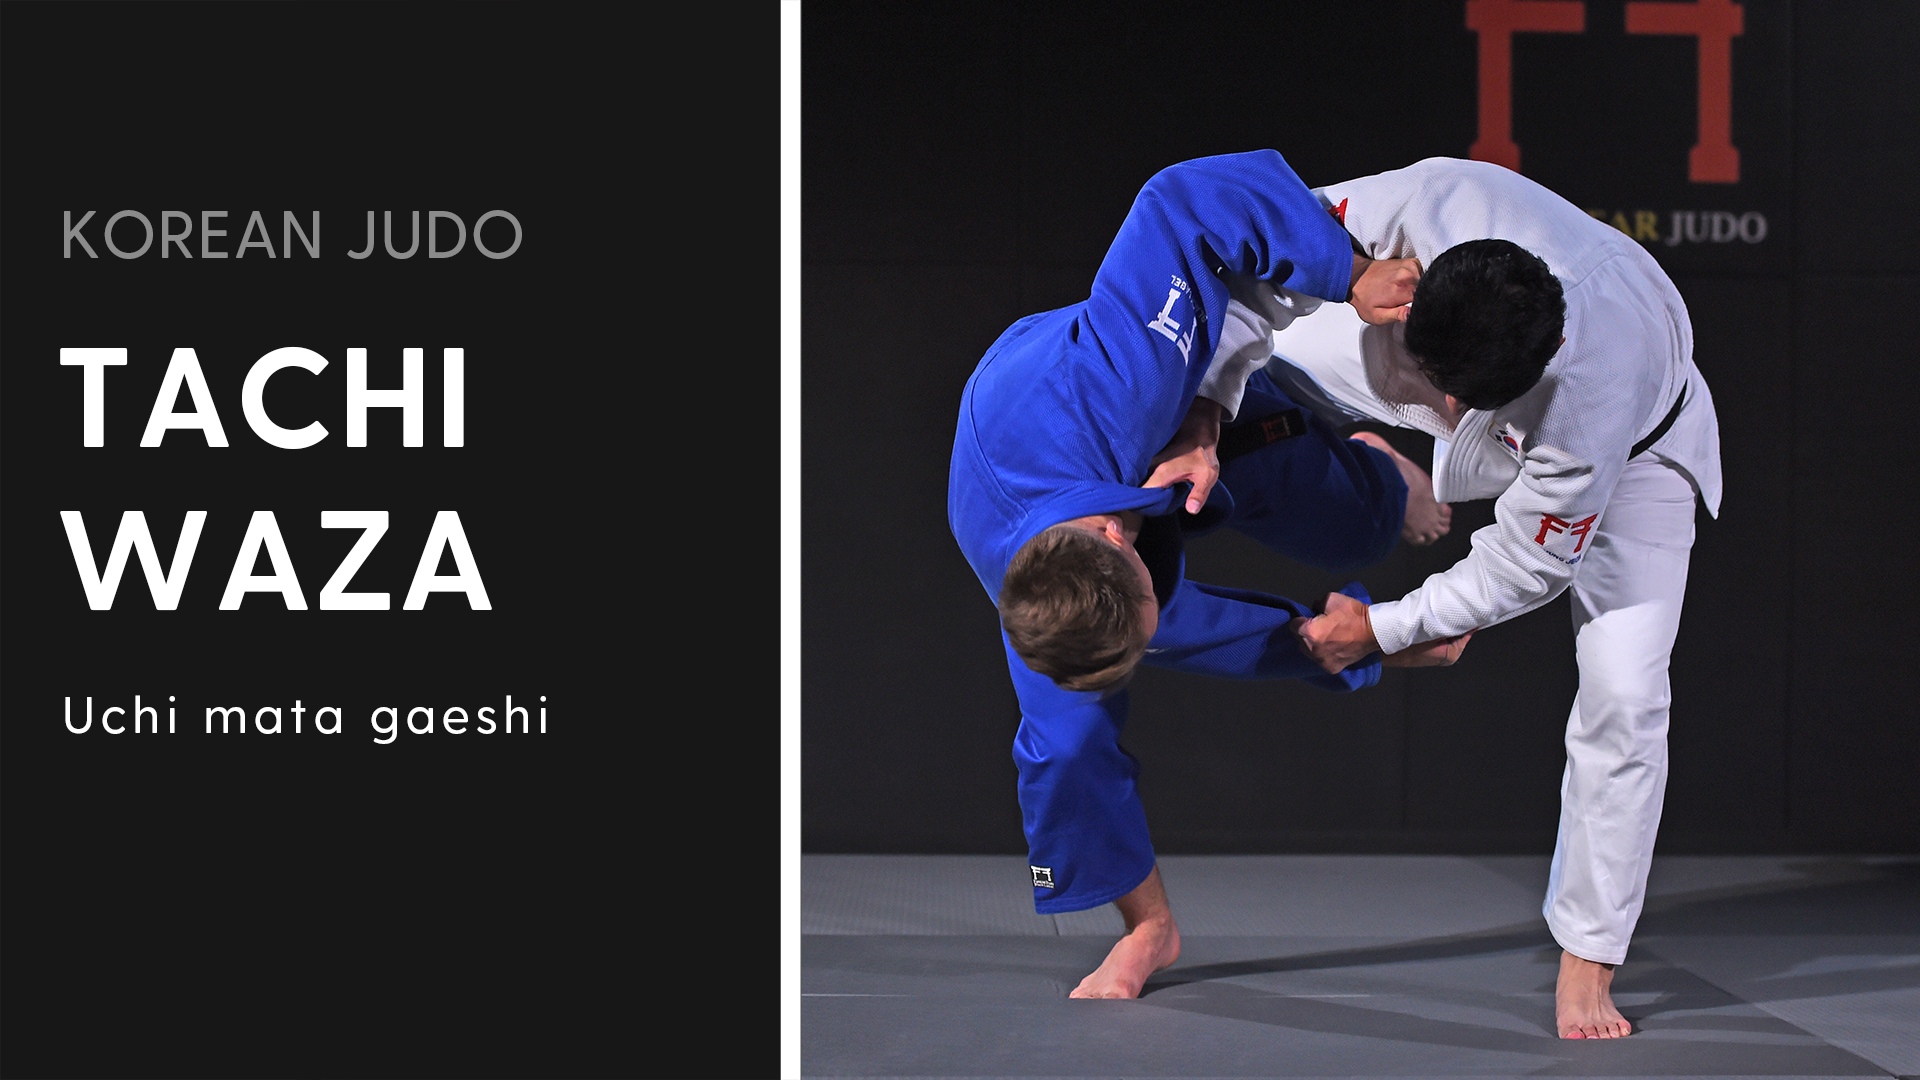 Uchi mata gaeshi Korean Judo - Tachi-waza